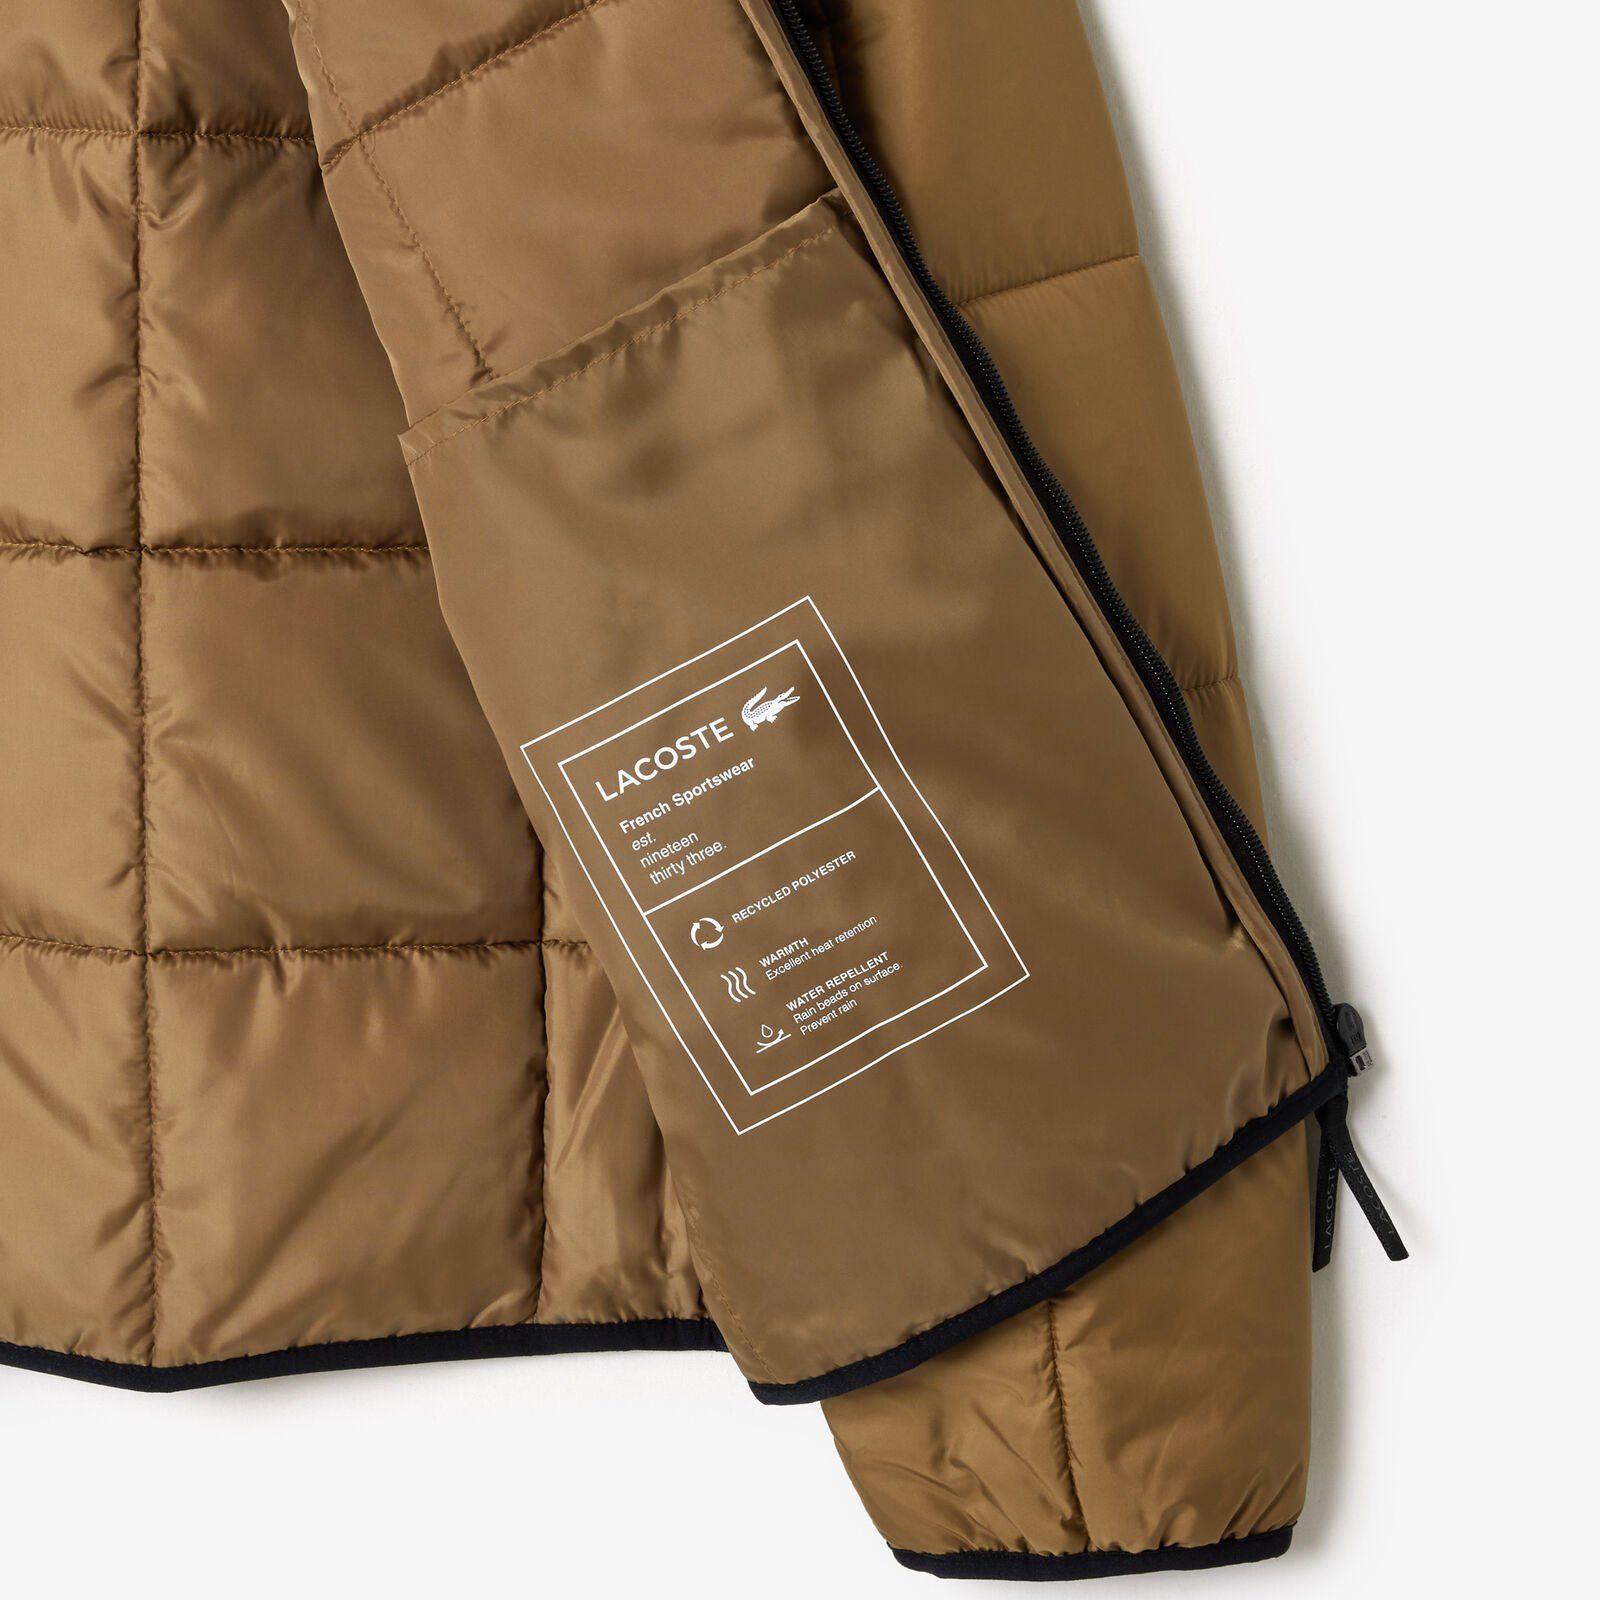 Outdoorjacke praktischen Lacoste QIN mit wasserabweisende Innenfächern marron-six / noir Jacke